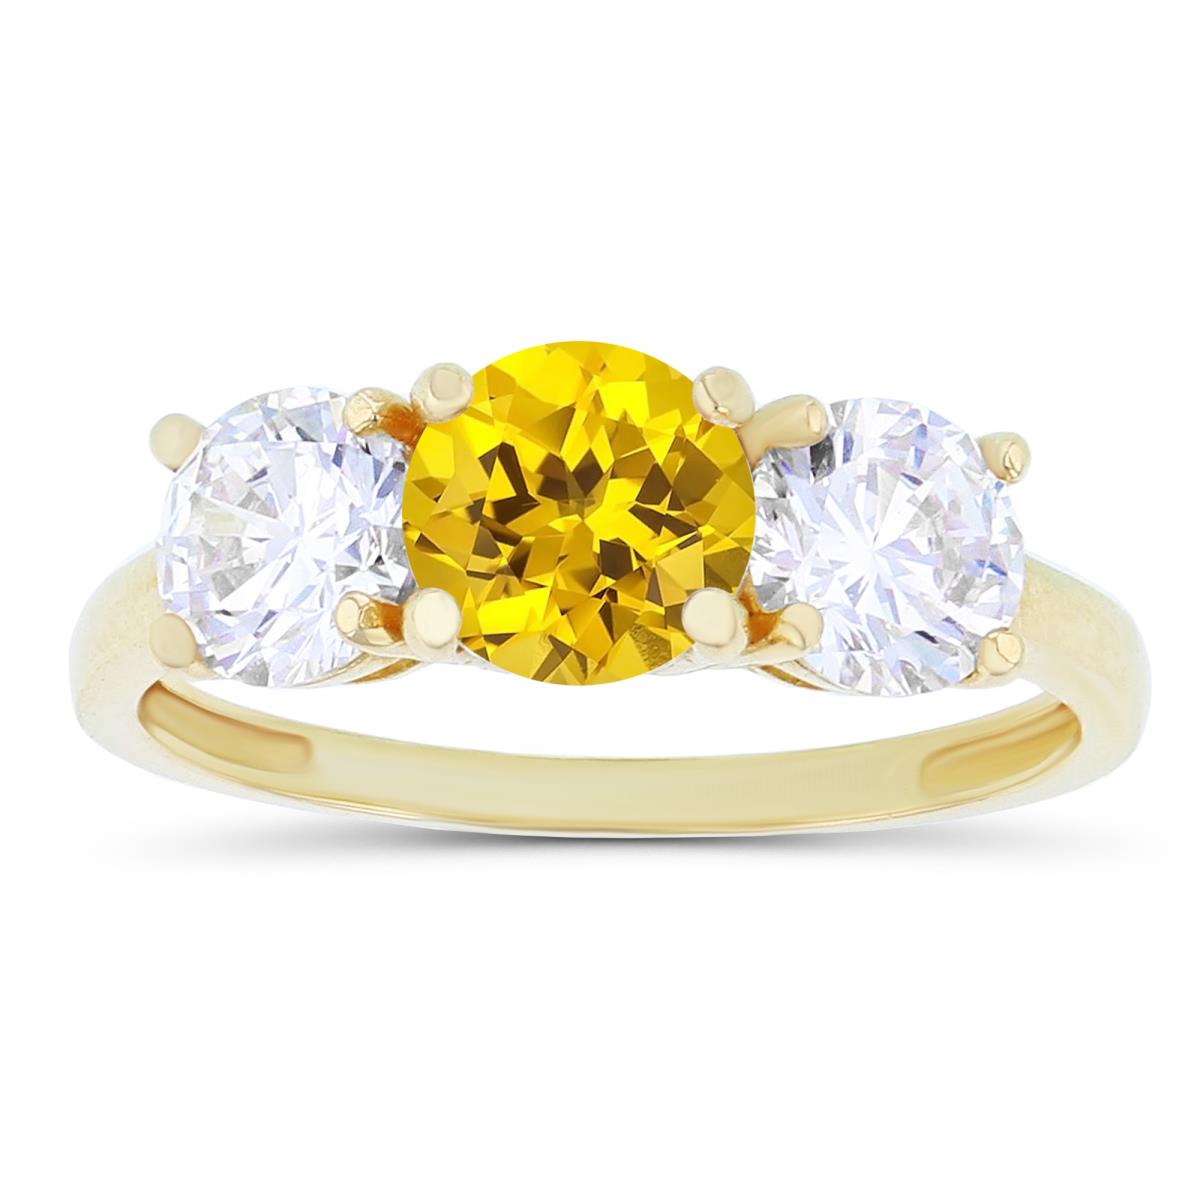 14K Yellow Gold 3-Stones Created Yellow Sapphire & Created White Sapphire Anniversary Ring